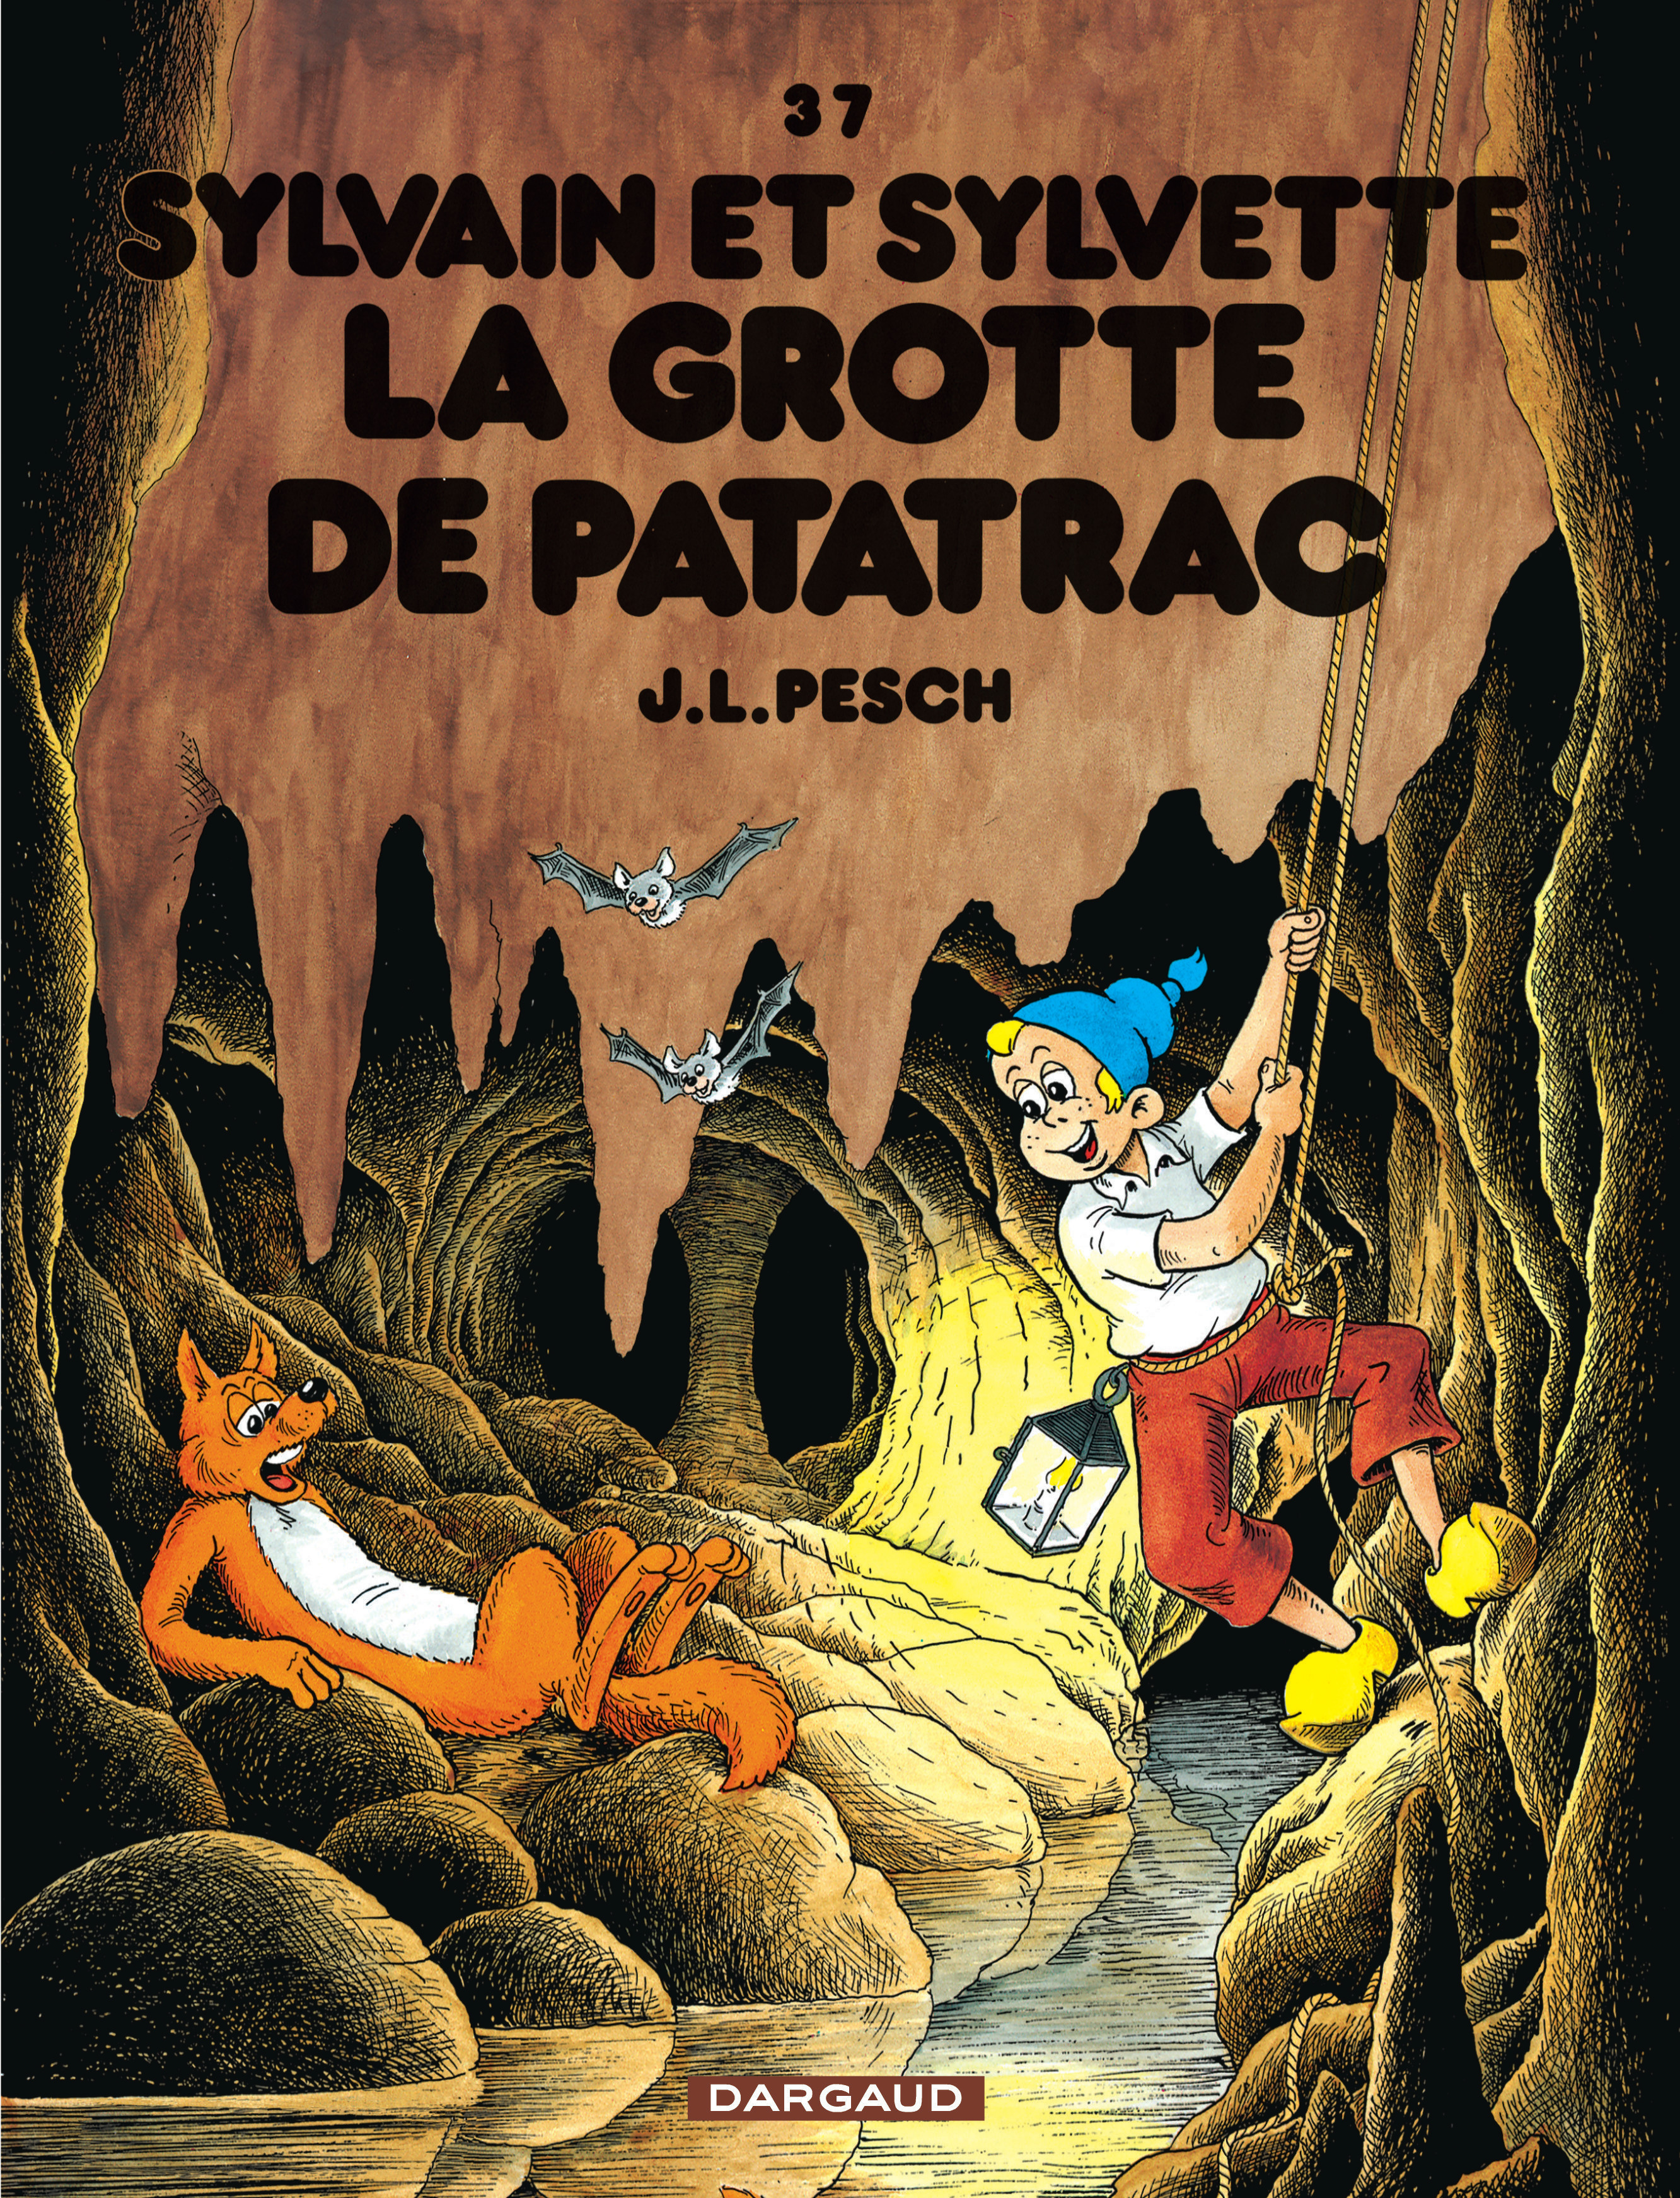 Sylvain et Sylvette – Tome 37 – La Grotte de Patatrac - couv